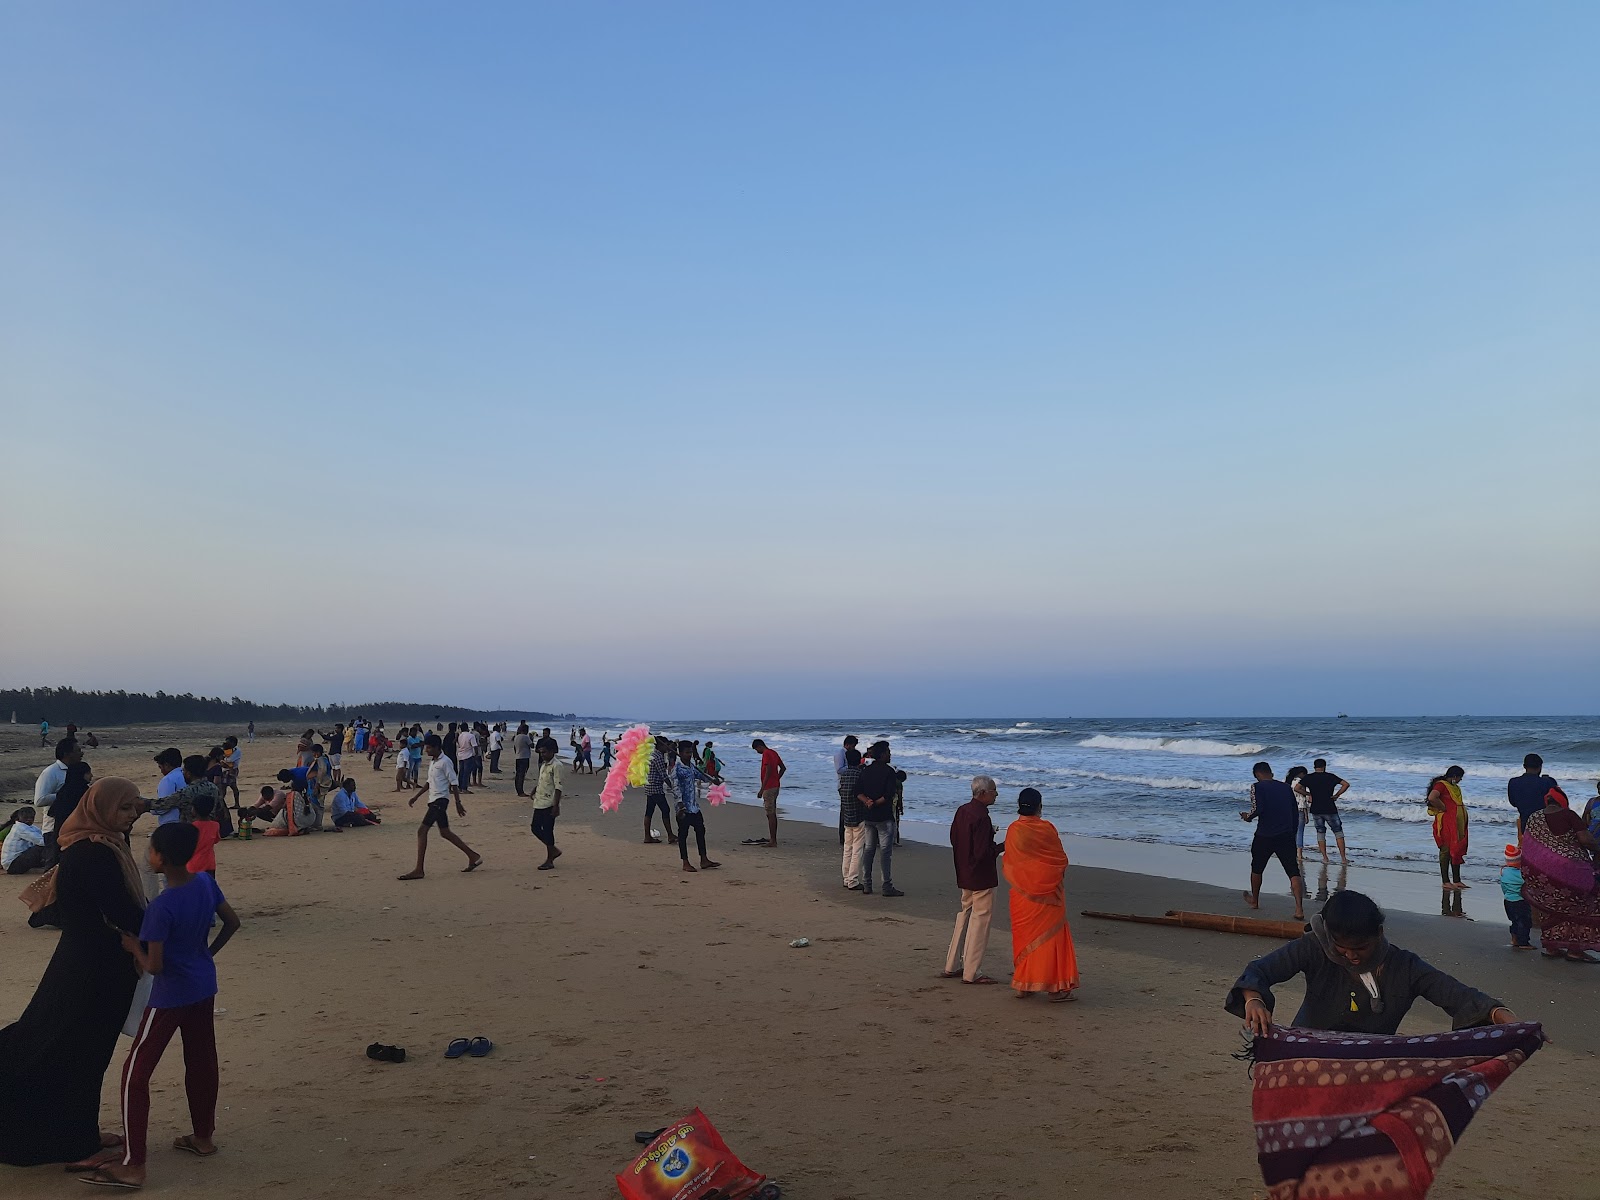 Fotografie cu Karaikal Beach cu nivelul de curățenie in medie